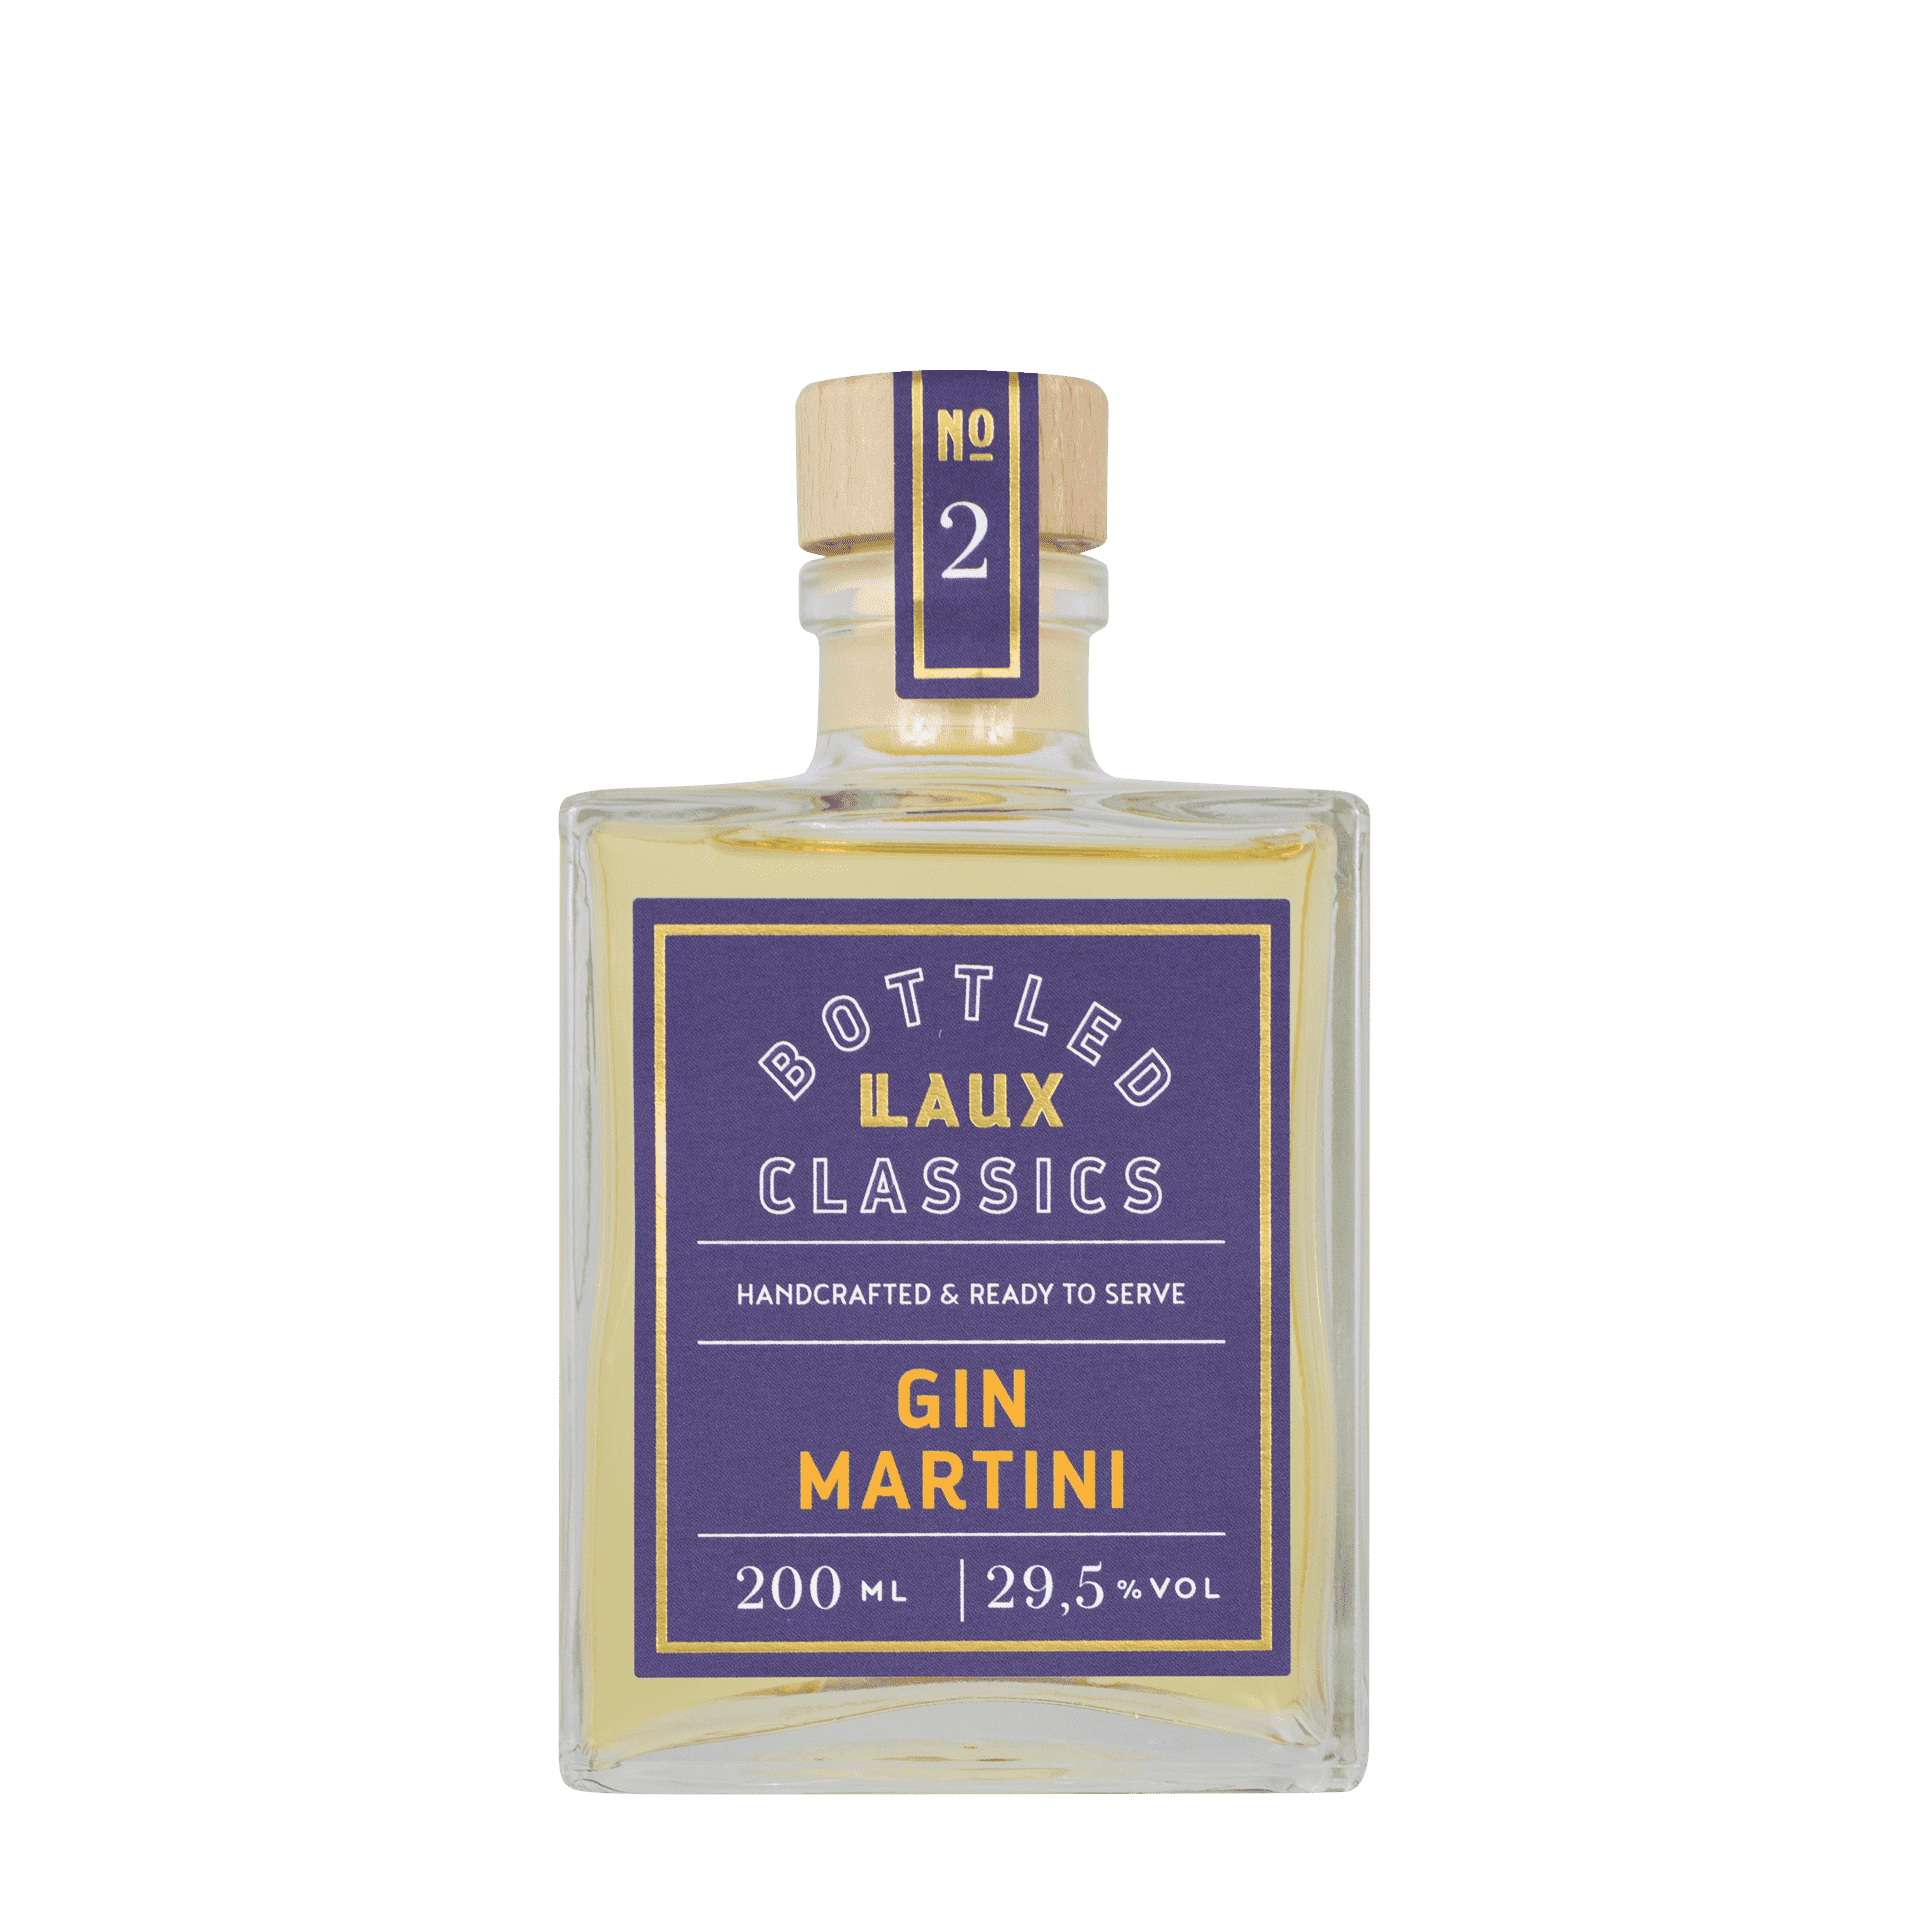 Gin Martini Fertigcocktail in Flasche